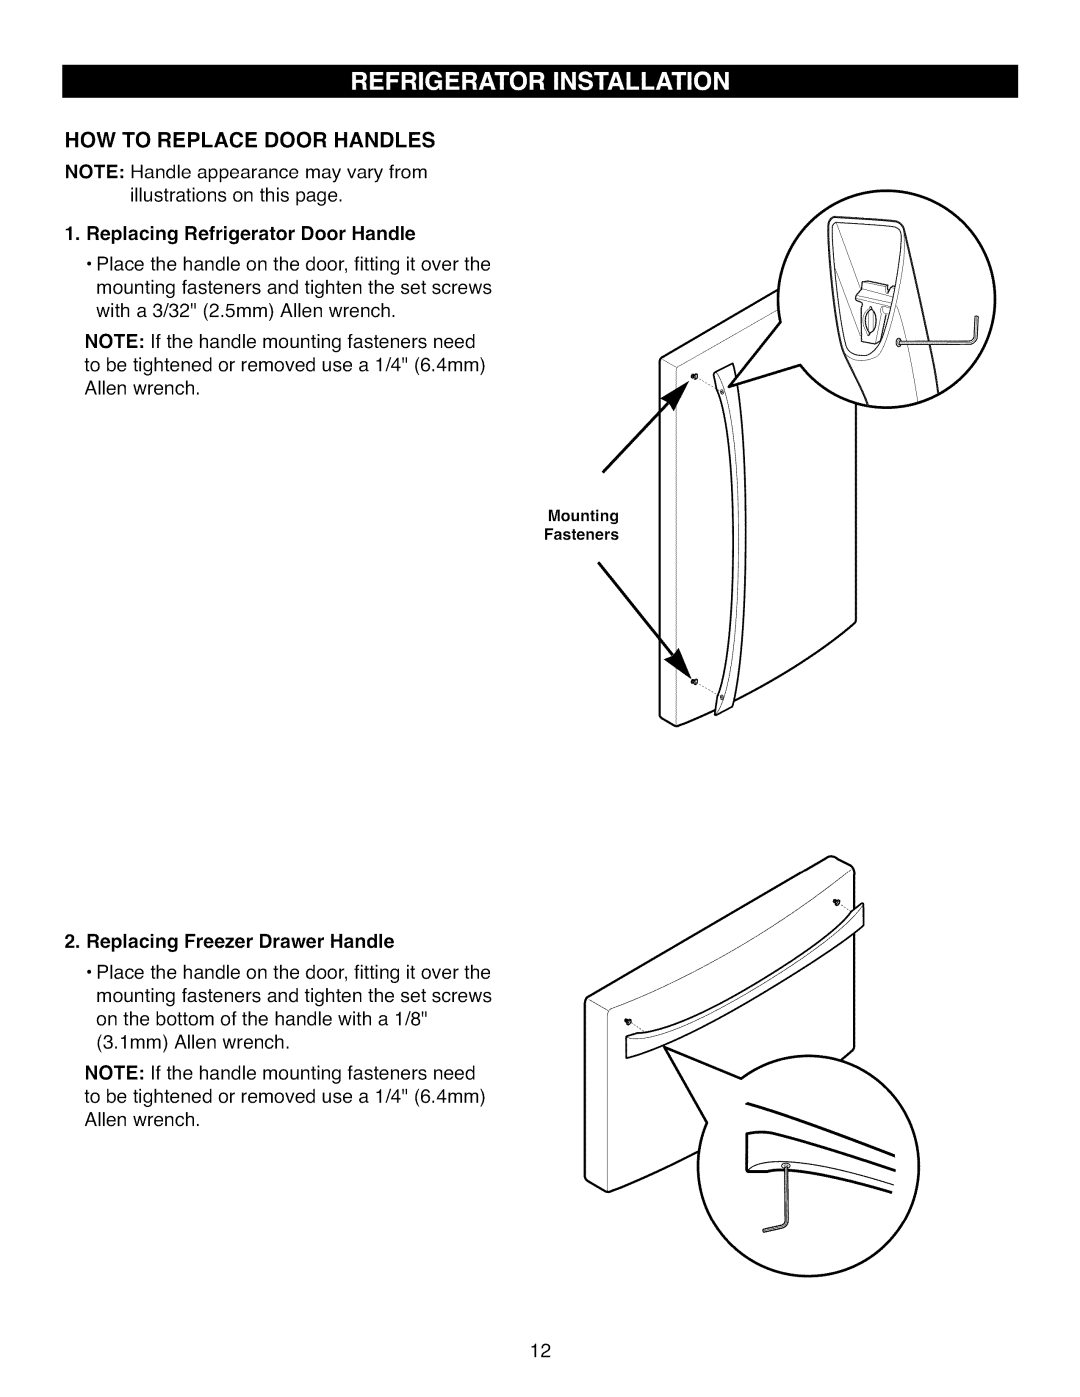 Kenmore 795.7104 manual How To Replace Door Handles, Replacing Refrigerator Door Handle, Replacing Freezer Drawer Handle 